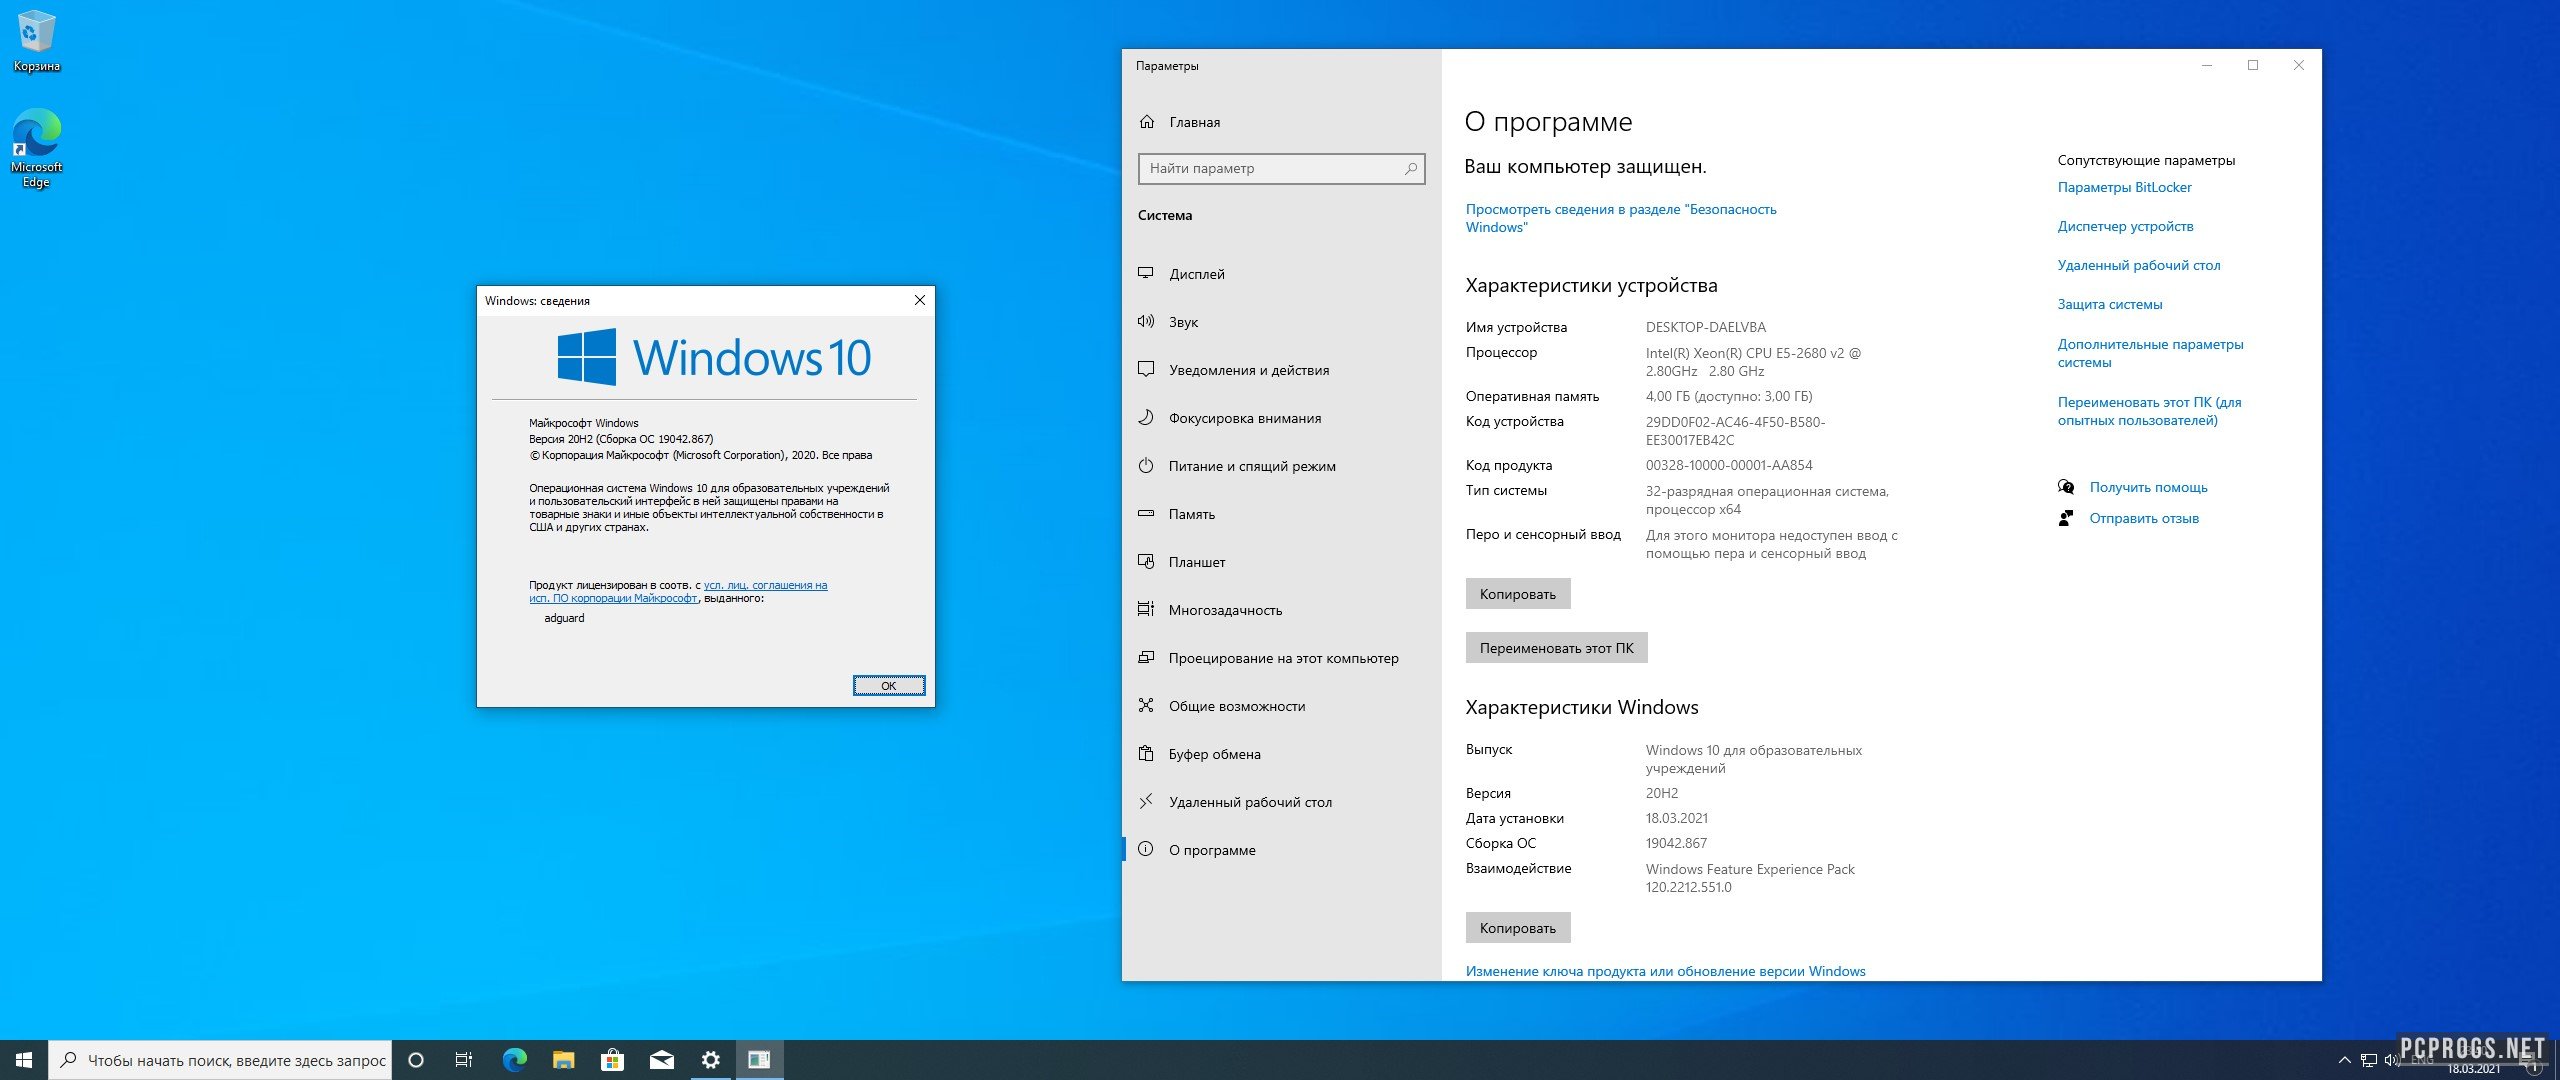 Windows 10 оригинальный чистый образ 3264 Bit скачать торрент